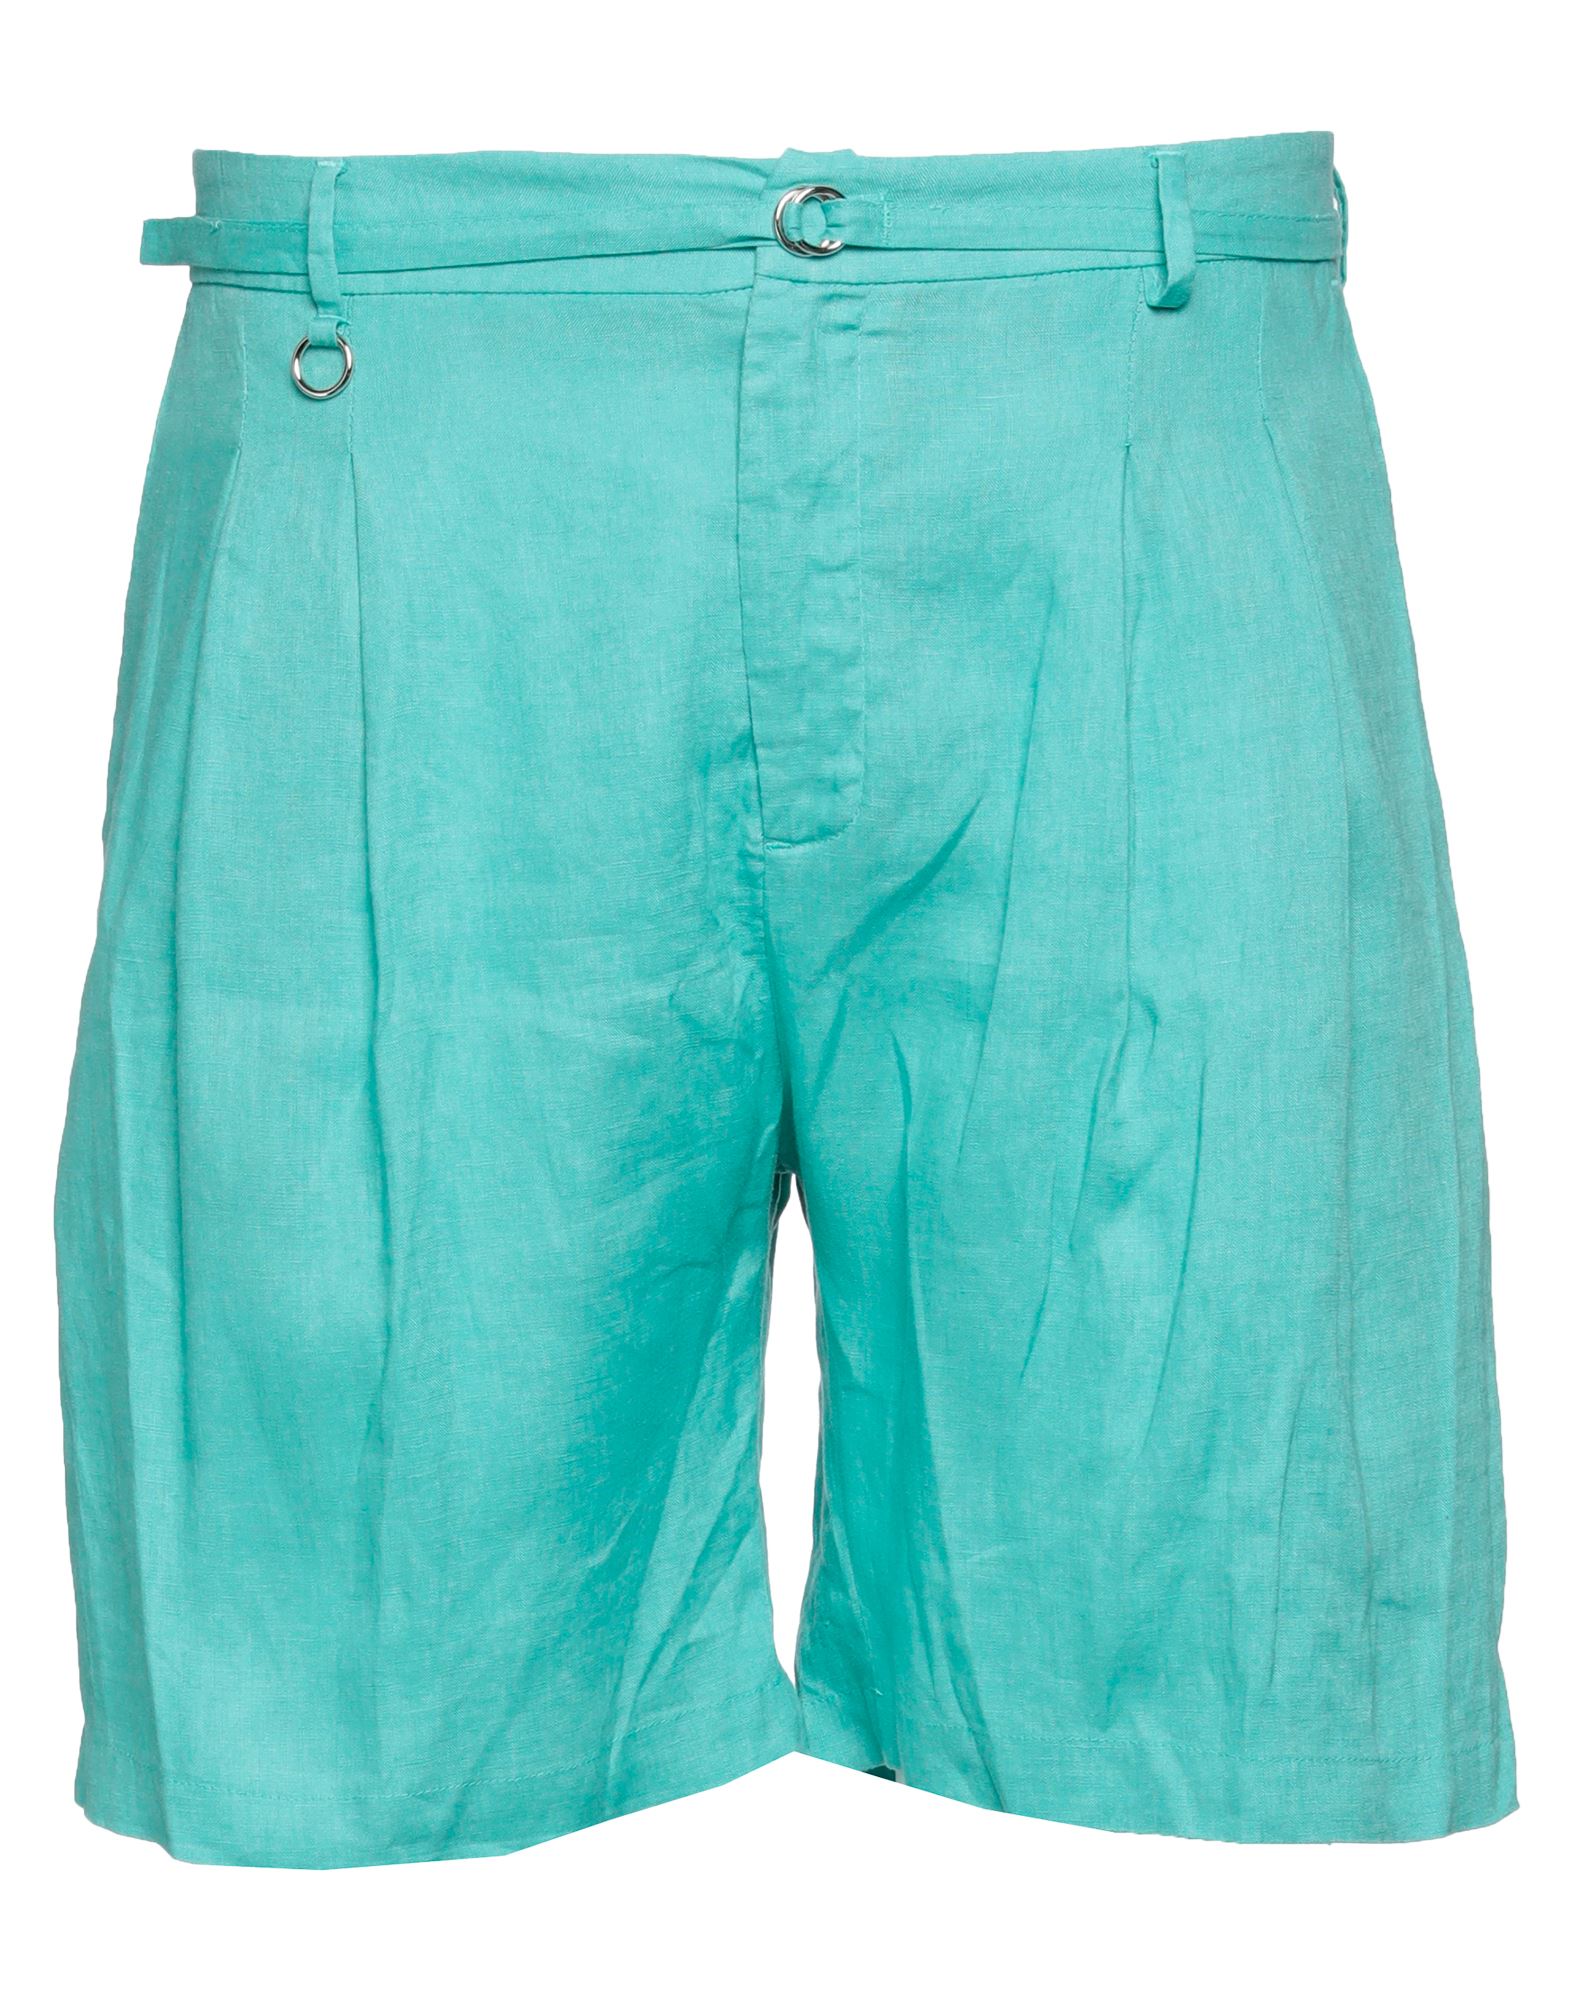 Golden Craft 1957 Man Shorts & Bermuda Shorts Emerald Green Size 34 Linen